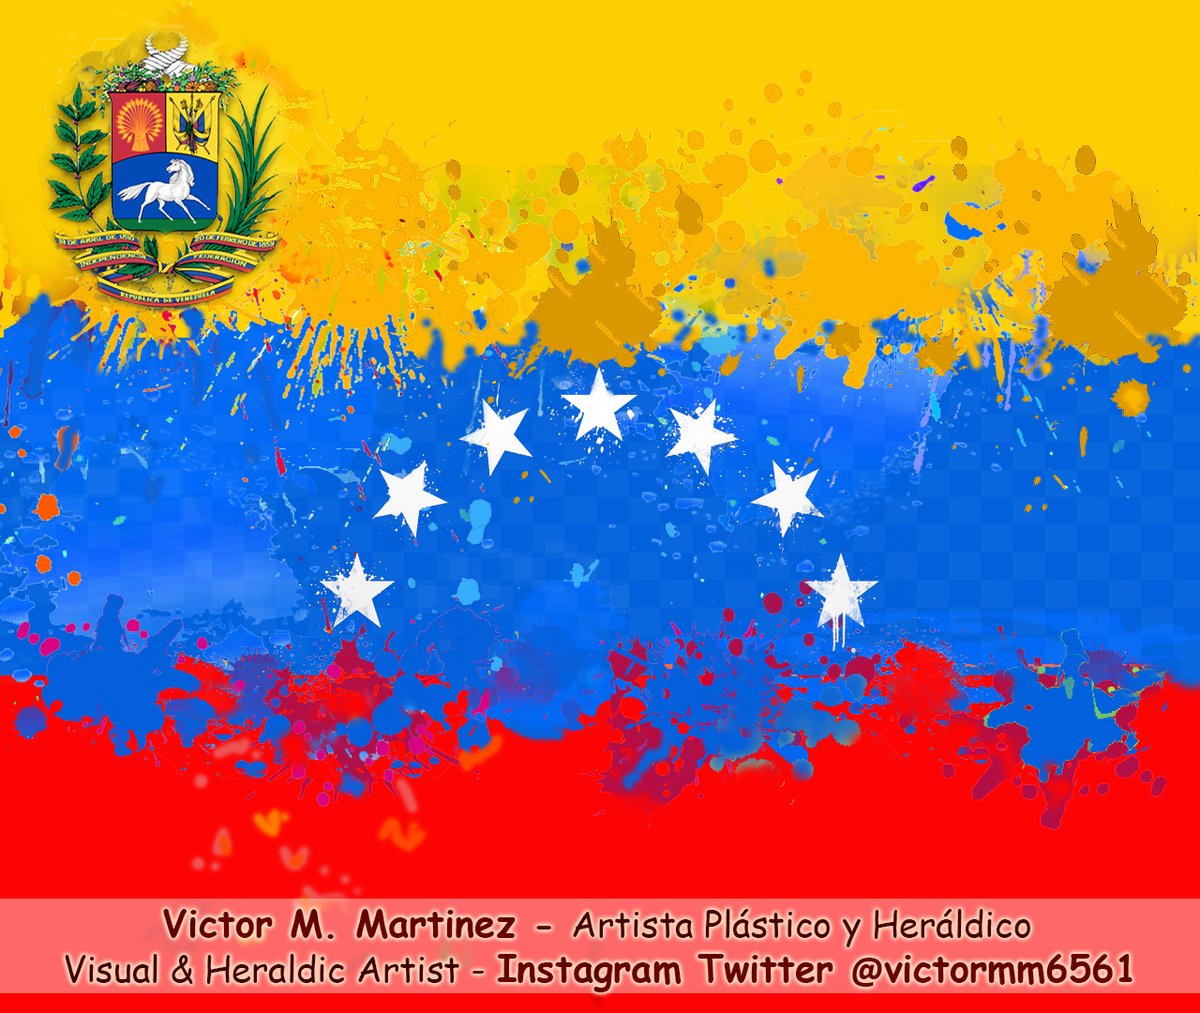 — El Artista Plástico es necesario? (La pregunta es Retórica) — No somos tomados en cuenta, ni por el Estado y el sector Privado. Ya no se consume Arte ó se patrocina. La mayoría prefiere salvar mascotas que al Arte. #Arte #Art #Artista #Artist #Heraldica #Carabobo #Venezuela